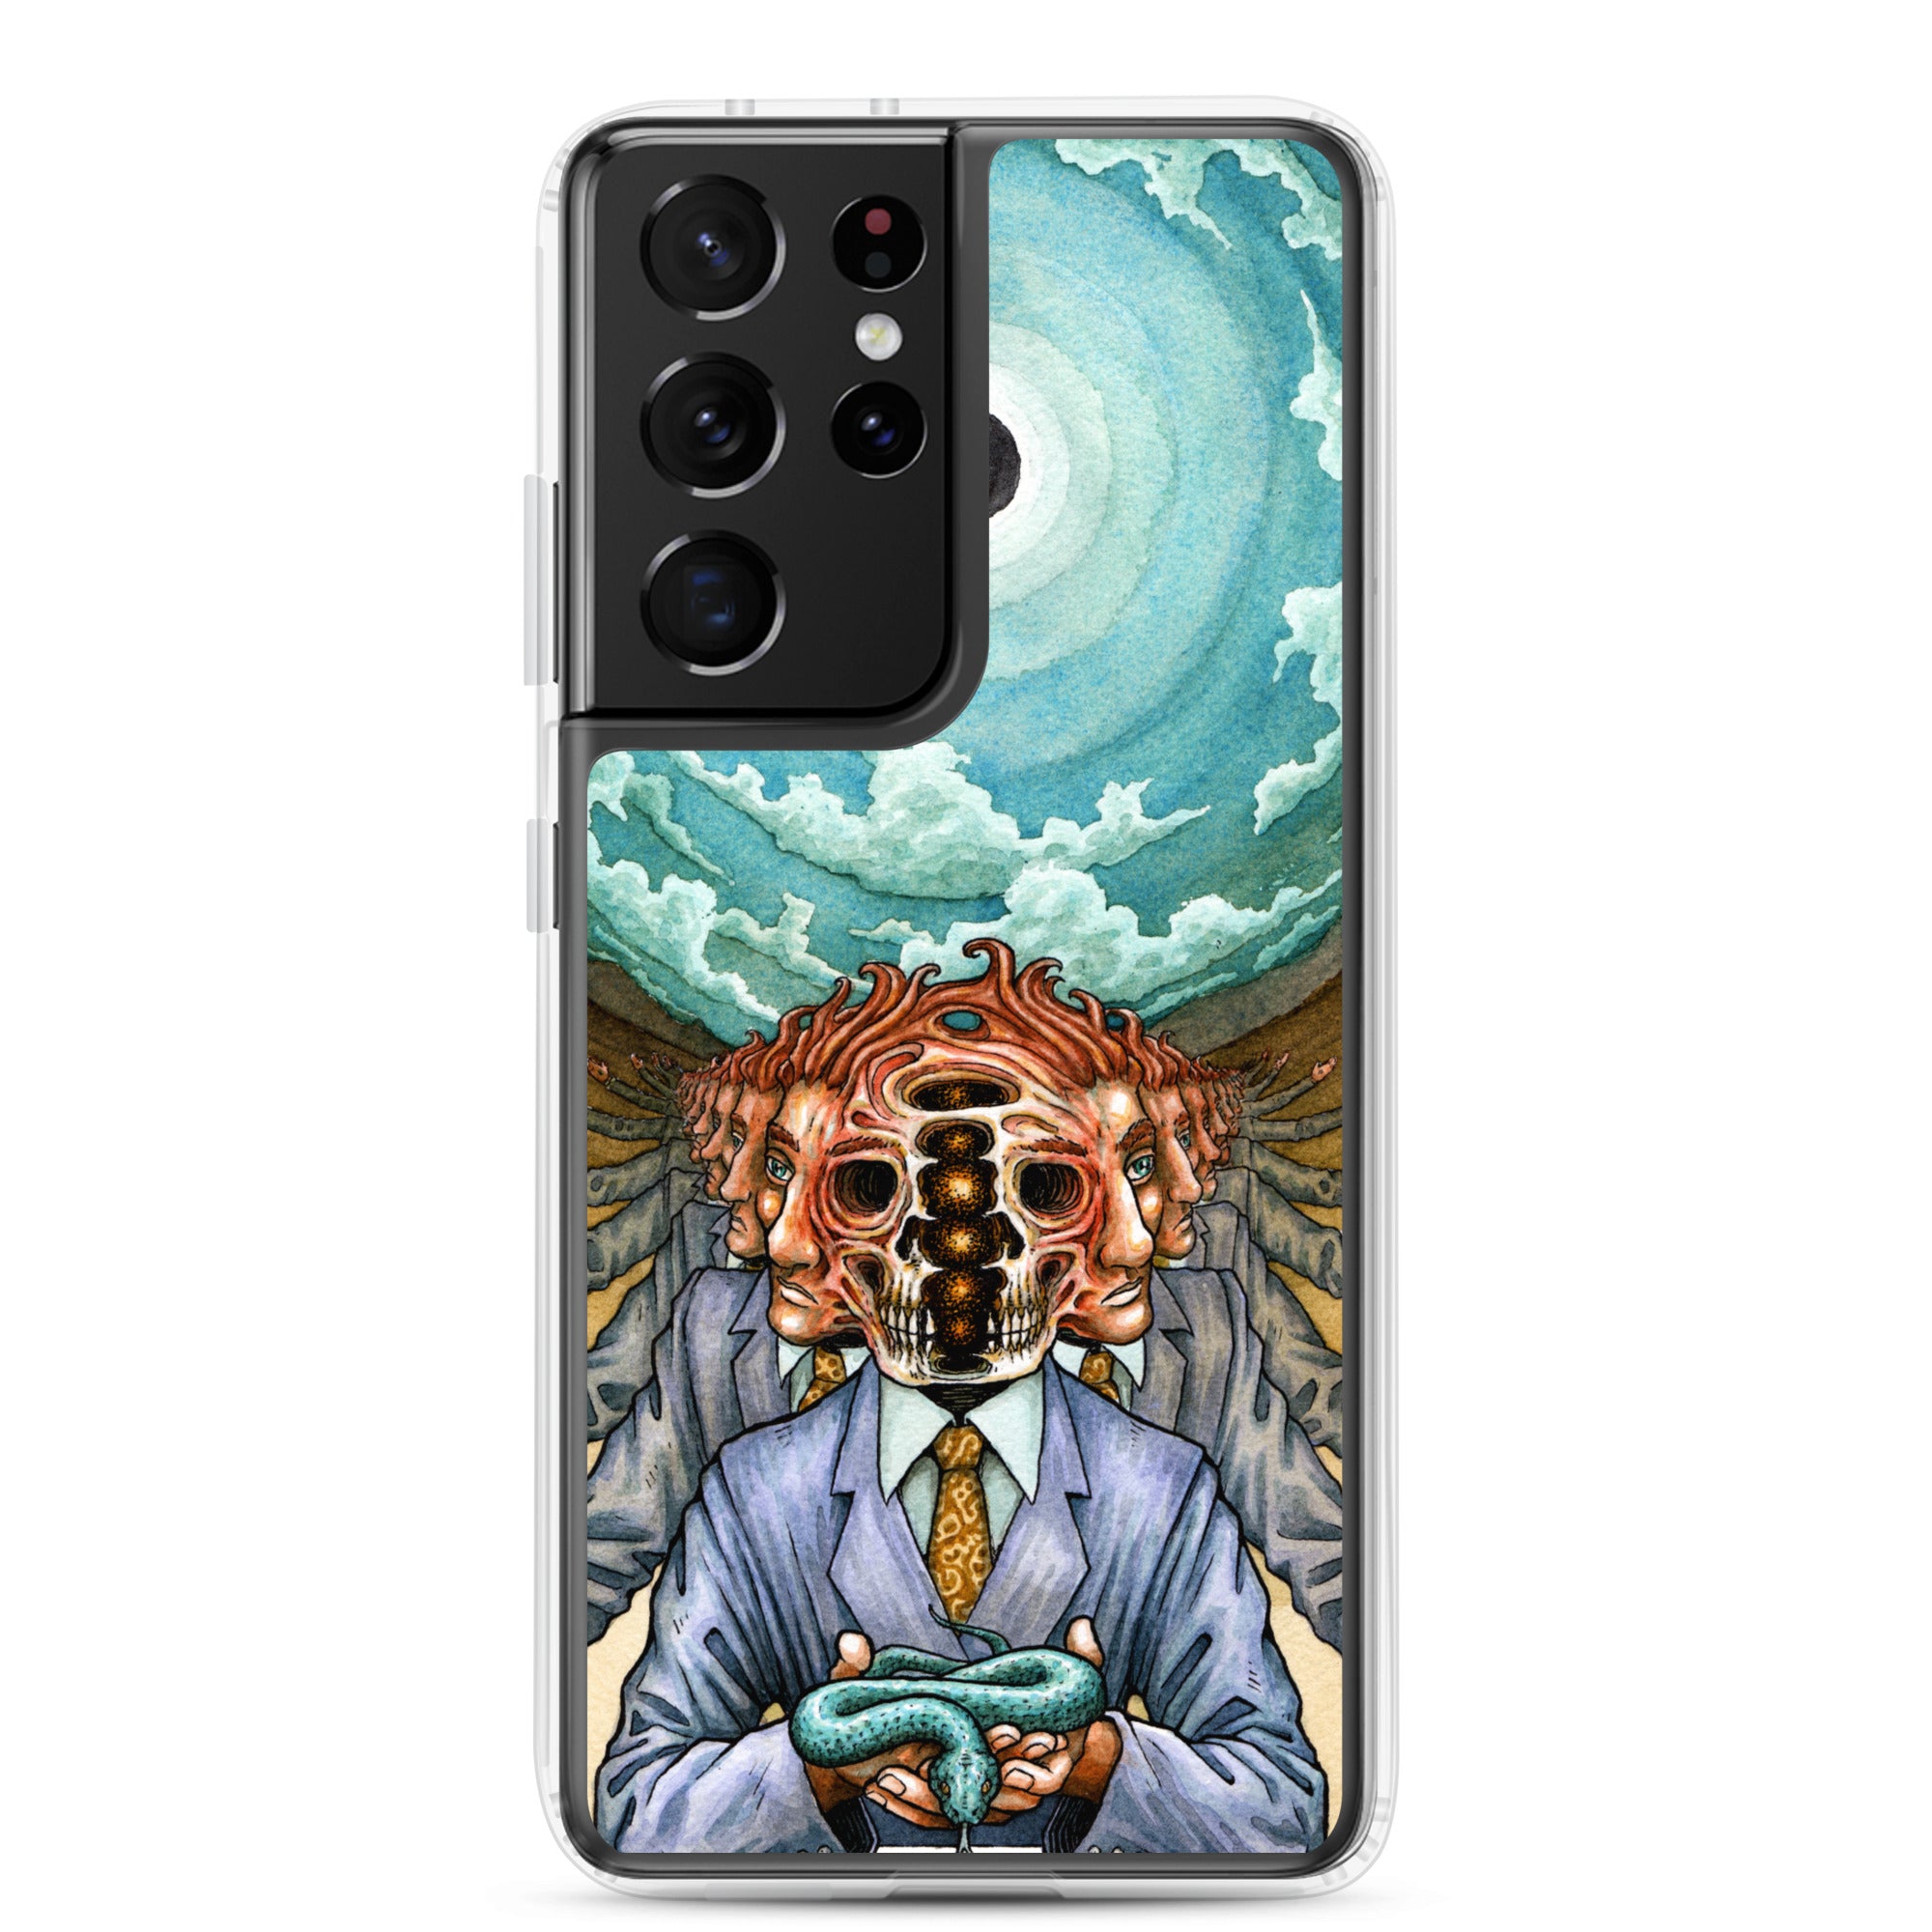 Samsung Case - Anima Mundi